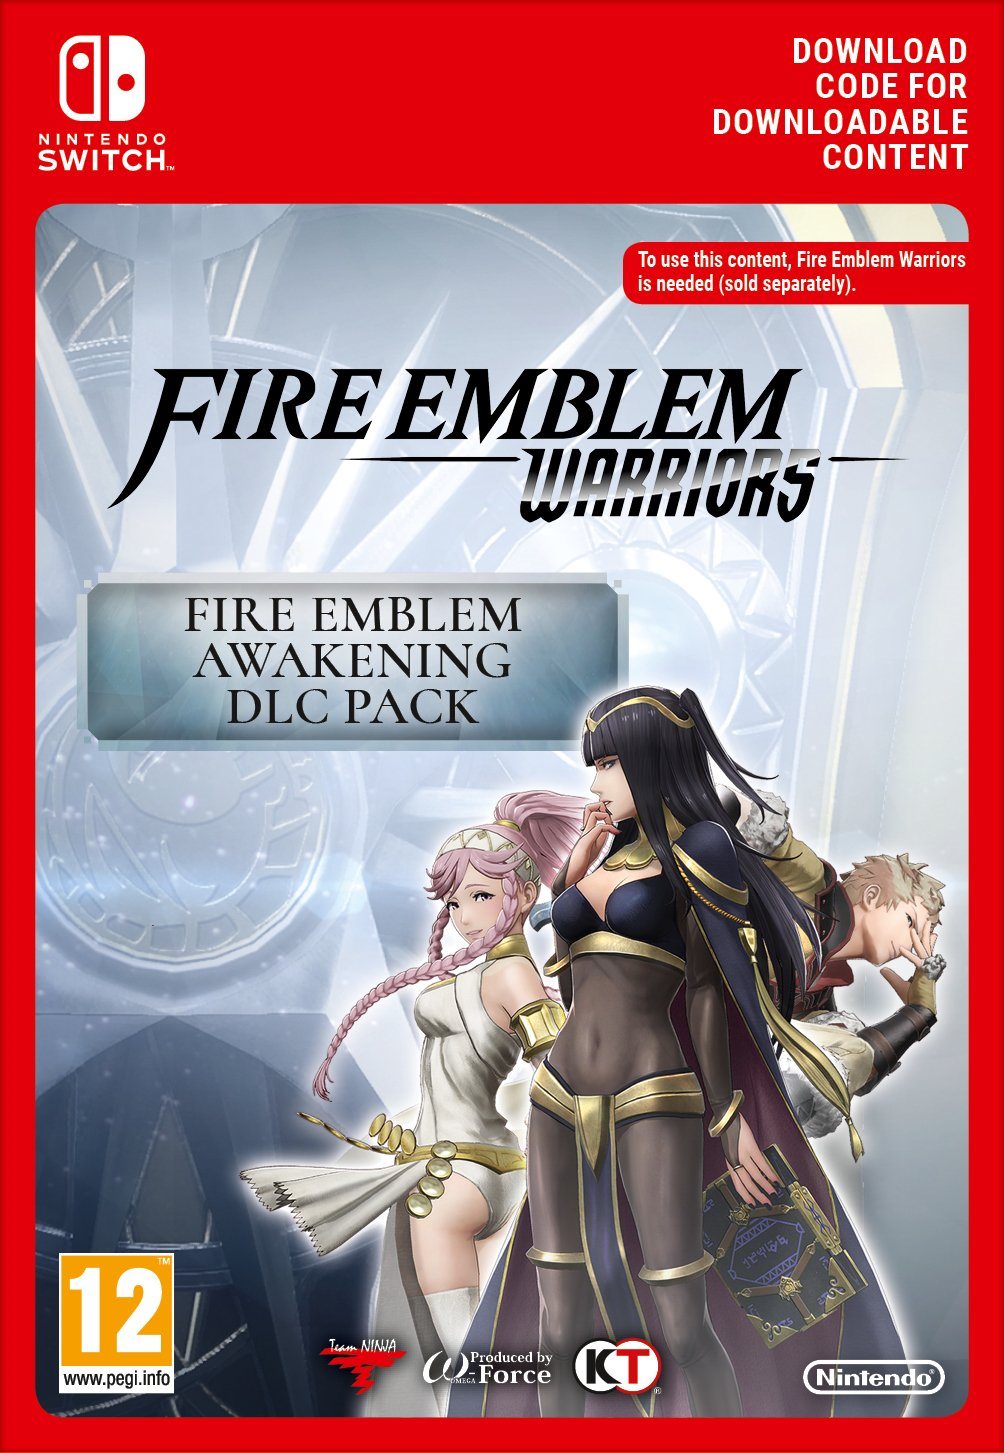 Fire Emblem Warriors: Fire Emblem Awakening Pack DLC - Nintendo Switch Digital